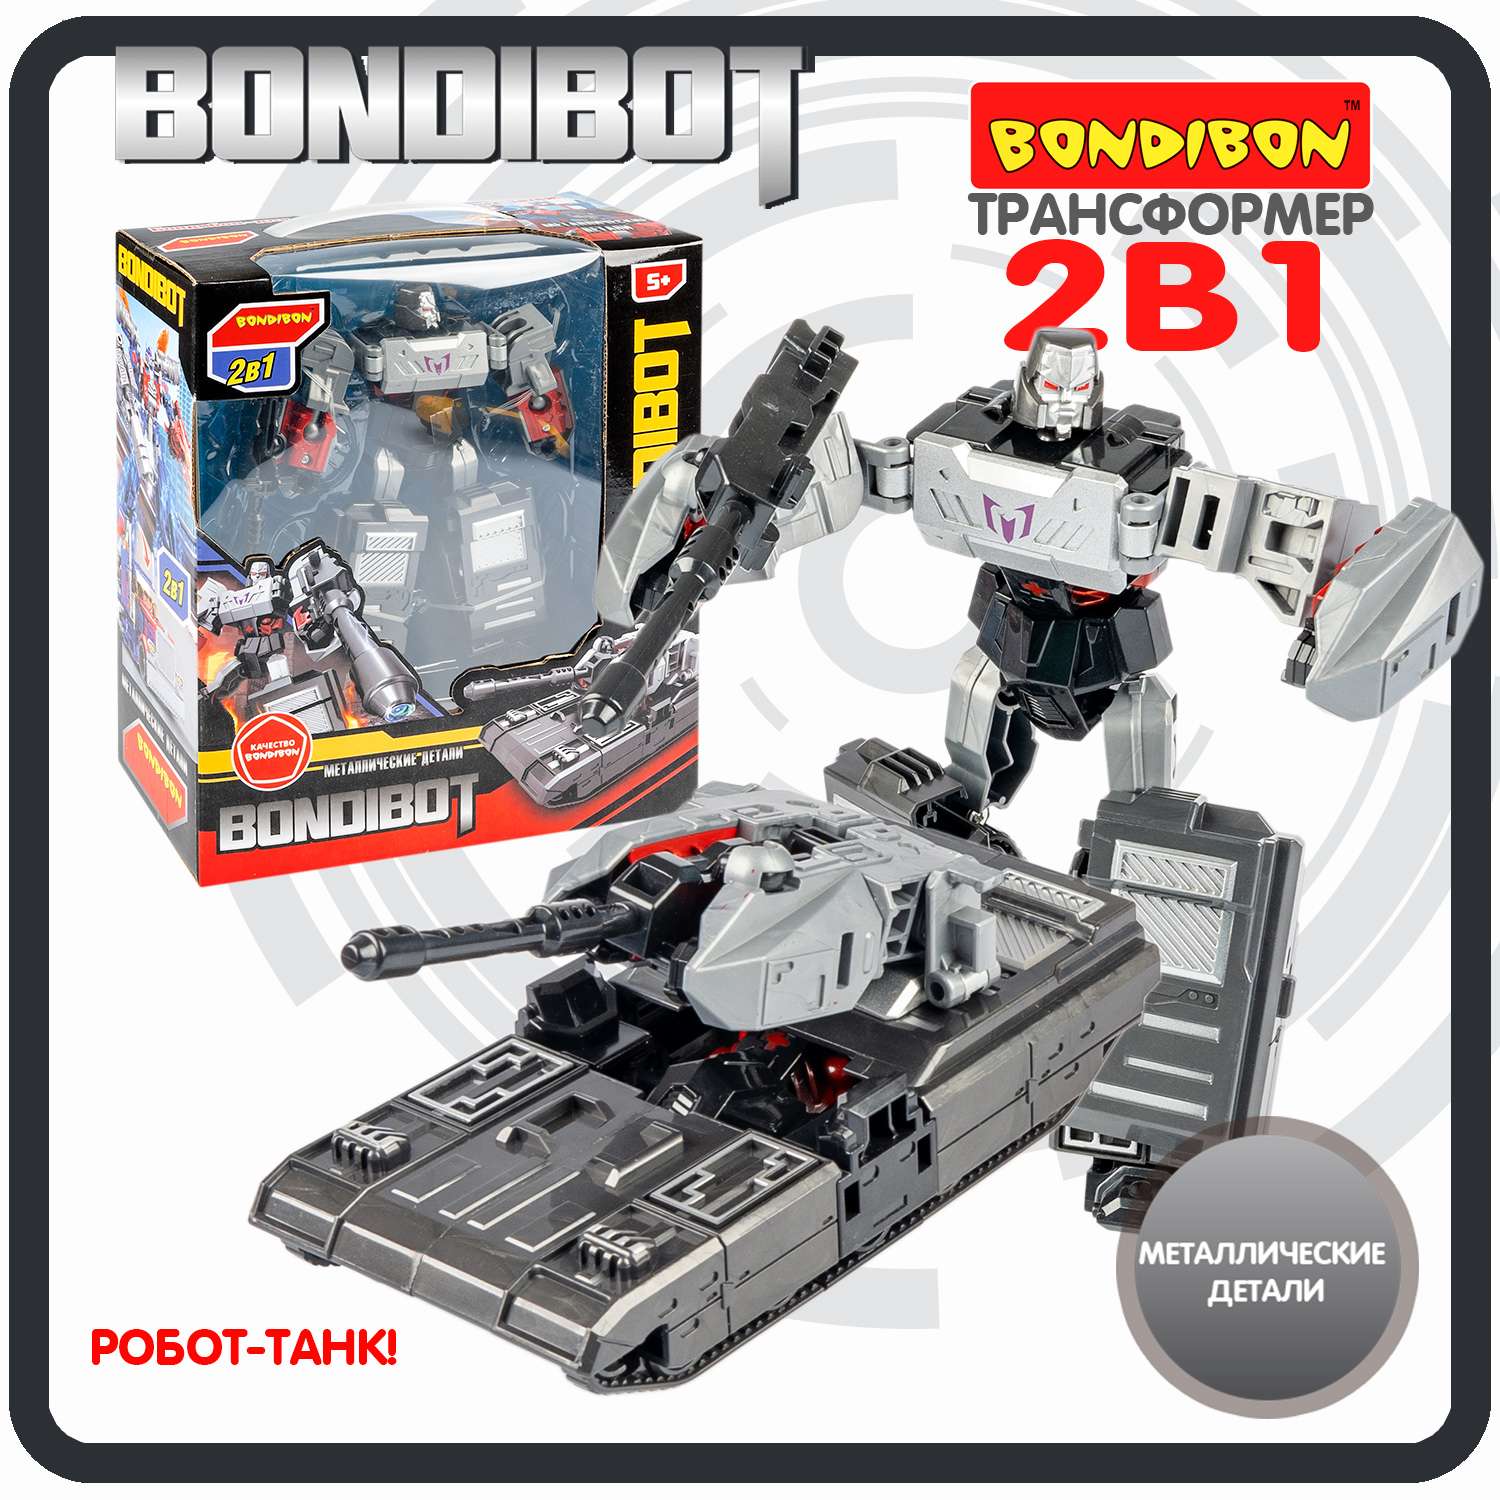 Трансформер BONDIBON BONDIBOT 2 в 1 робот-танк с металлическими деталями темно-серого цвета - фото 1